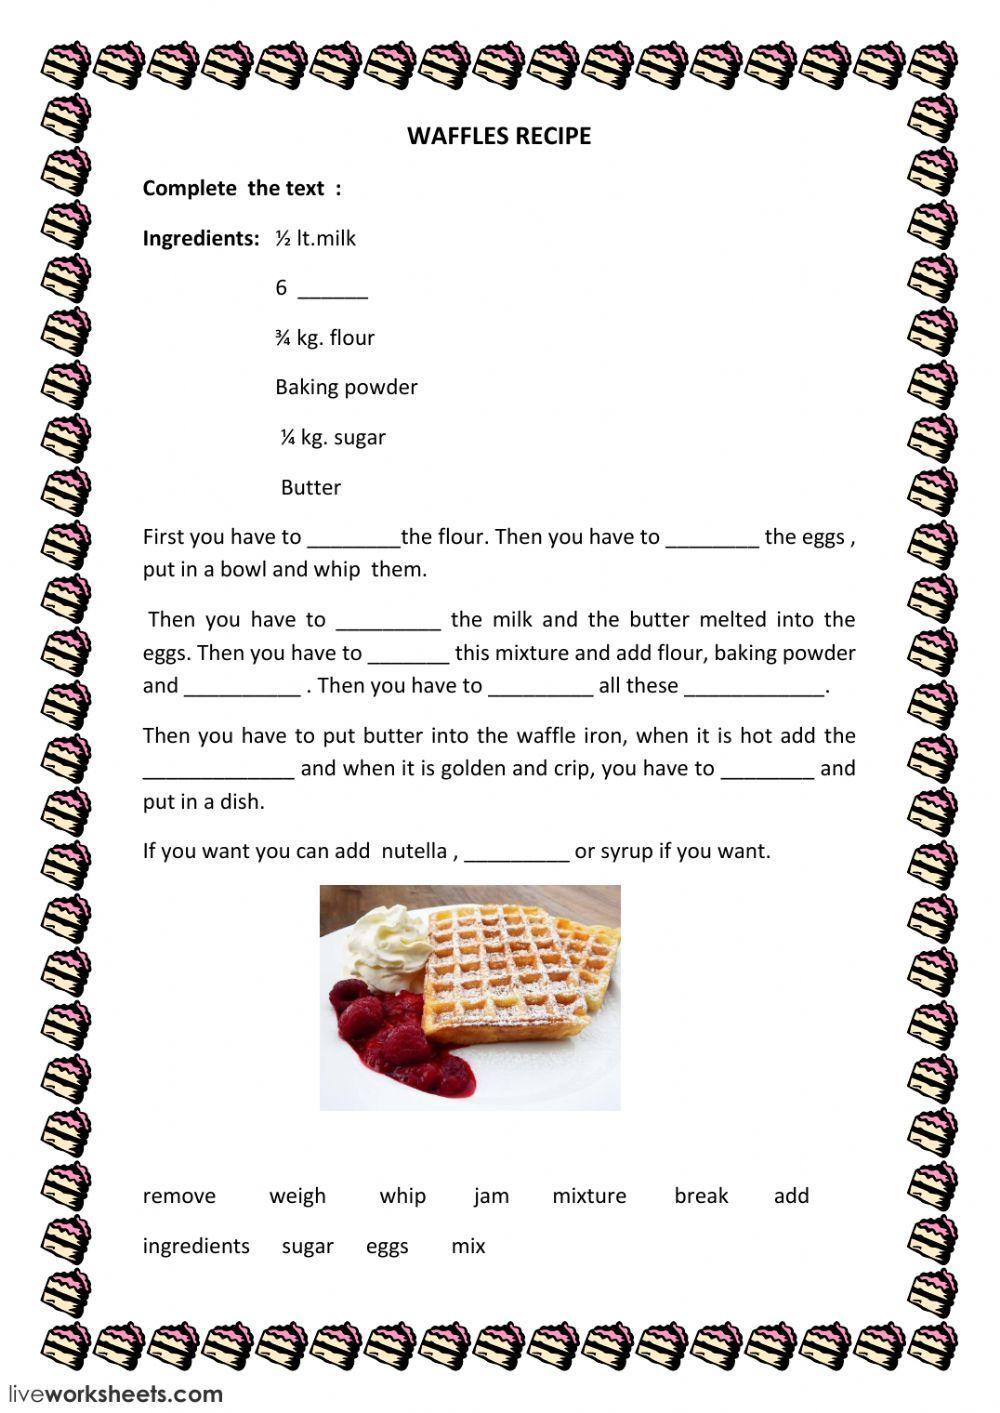 waffles recipe